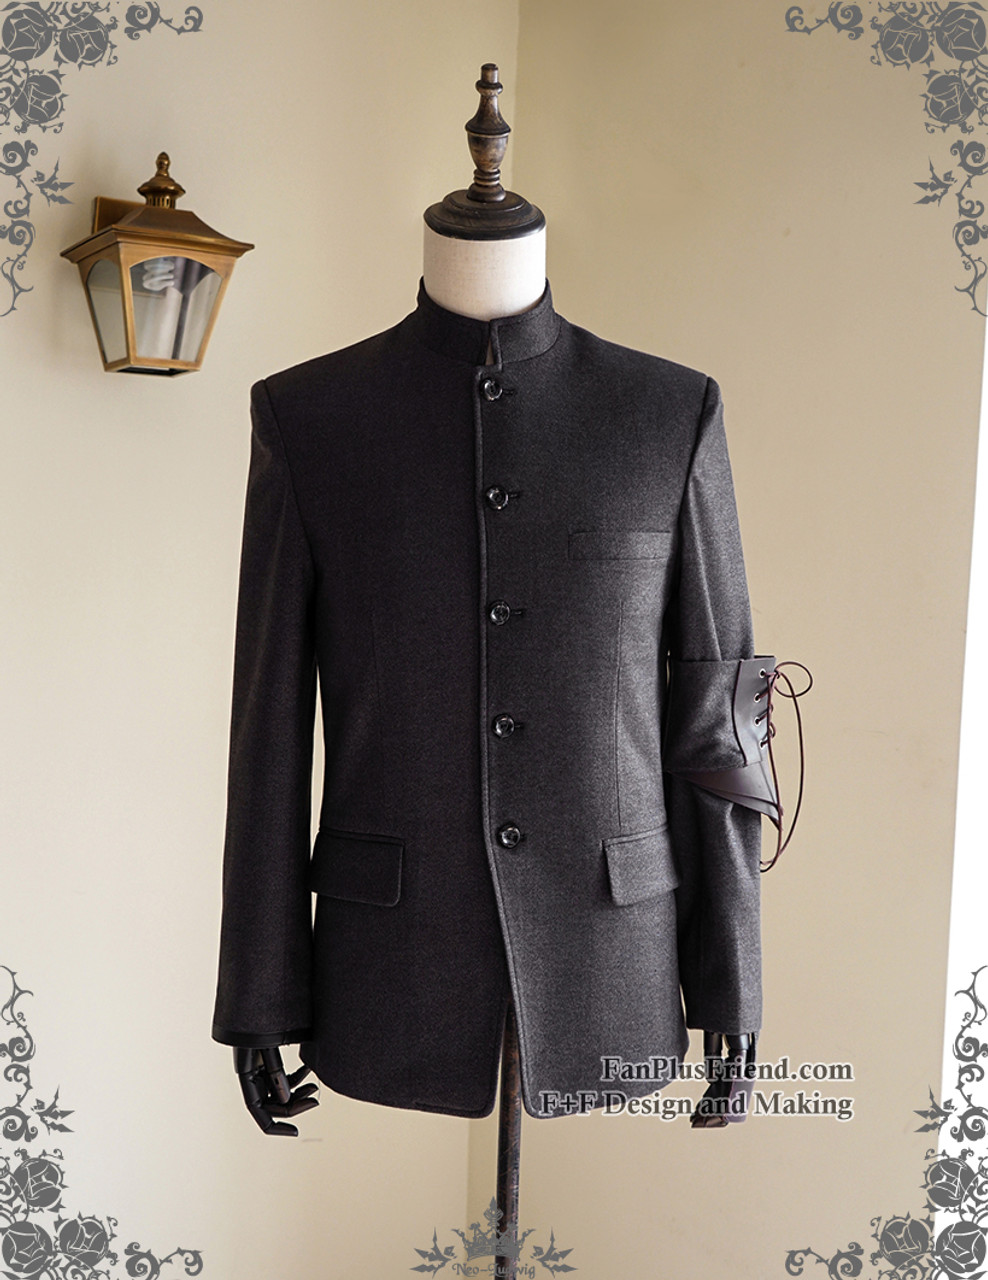 Vintage Men Coat Jacket Leather Armband Set Grey Punk Pirate